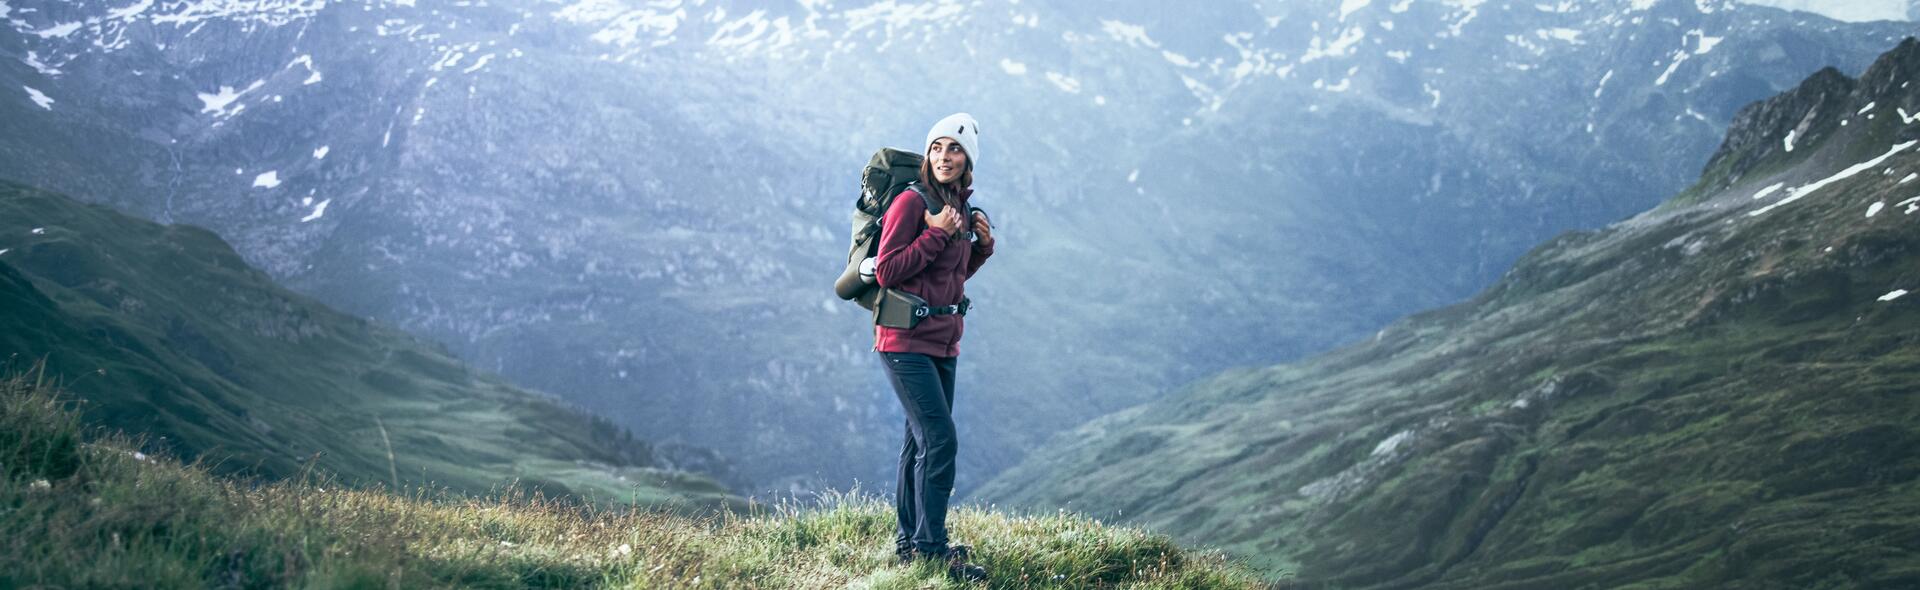 kobieta w odzieży trekkingowej z plecakiem na plecach stojąca w górach